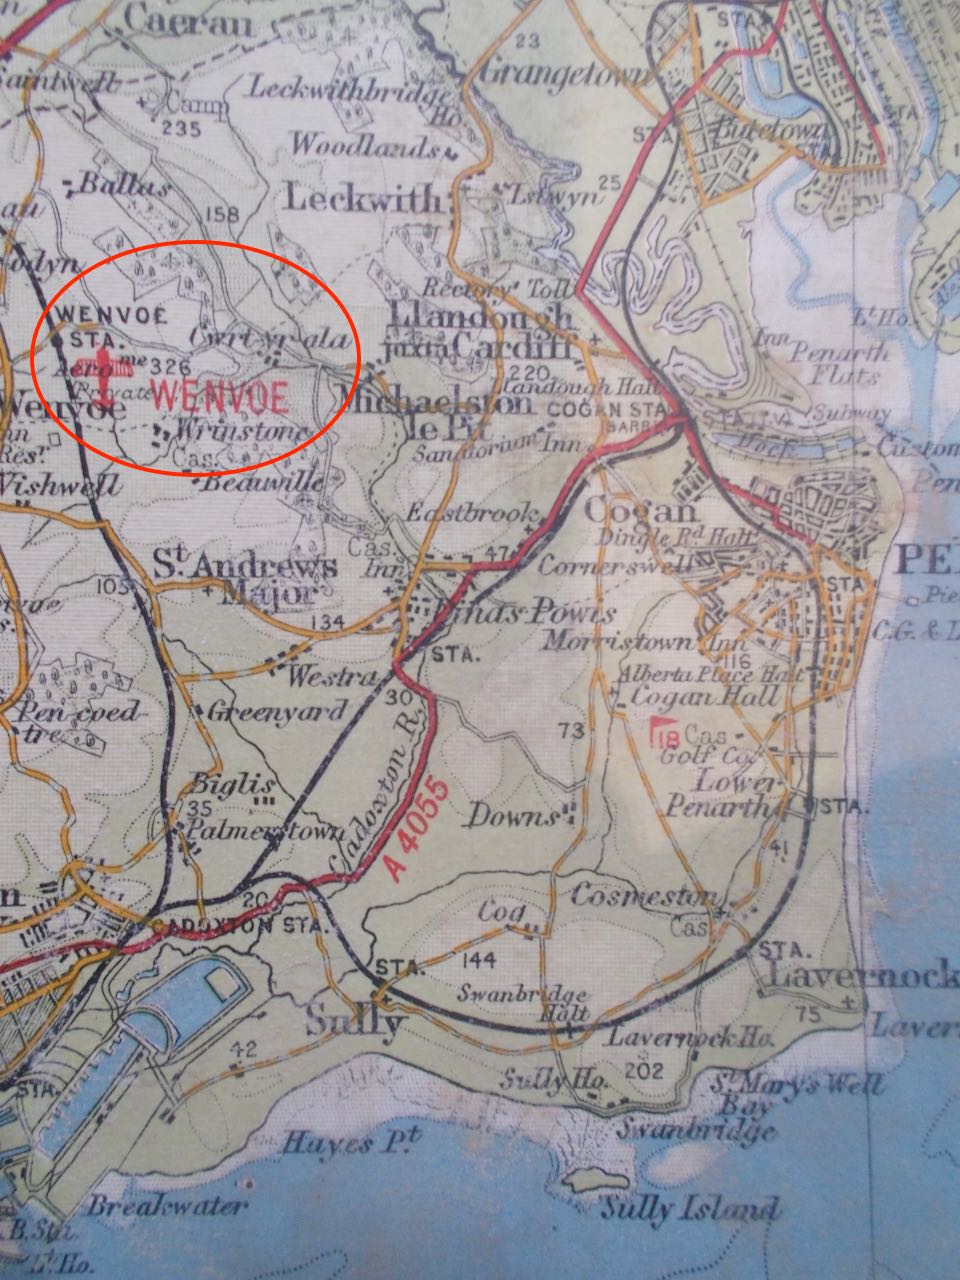 Dinas Powys Patrol OB Location 